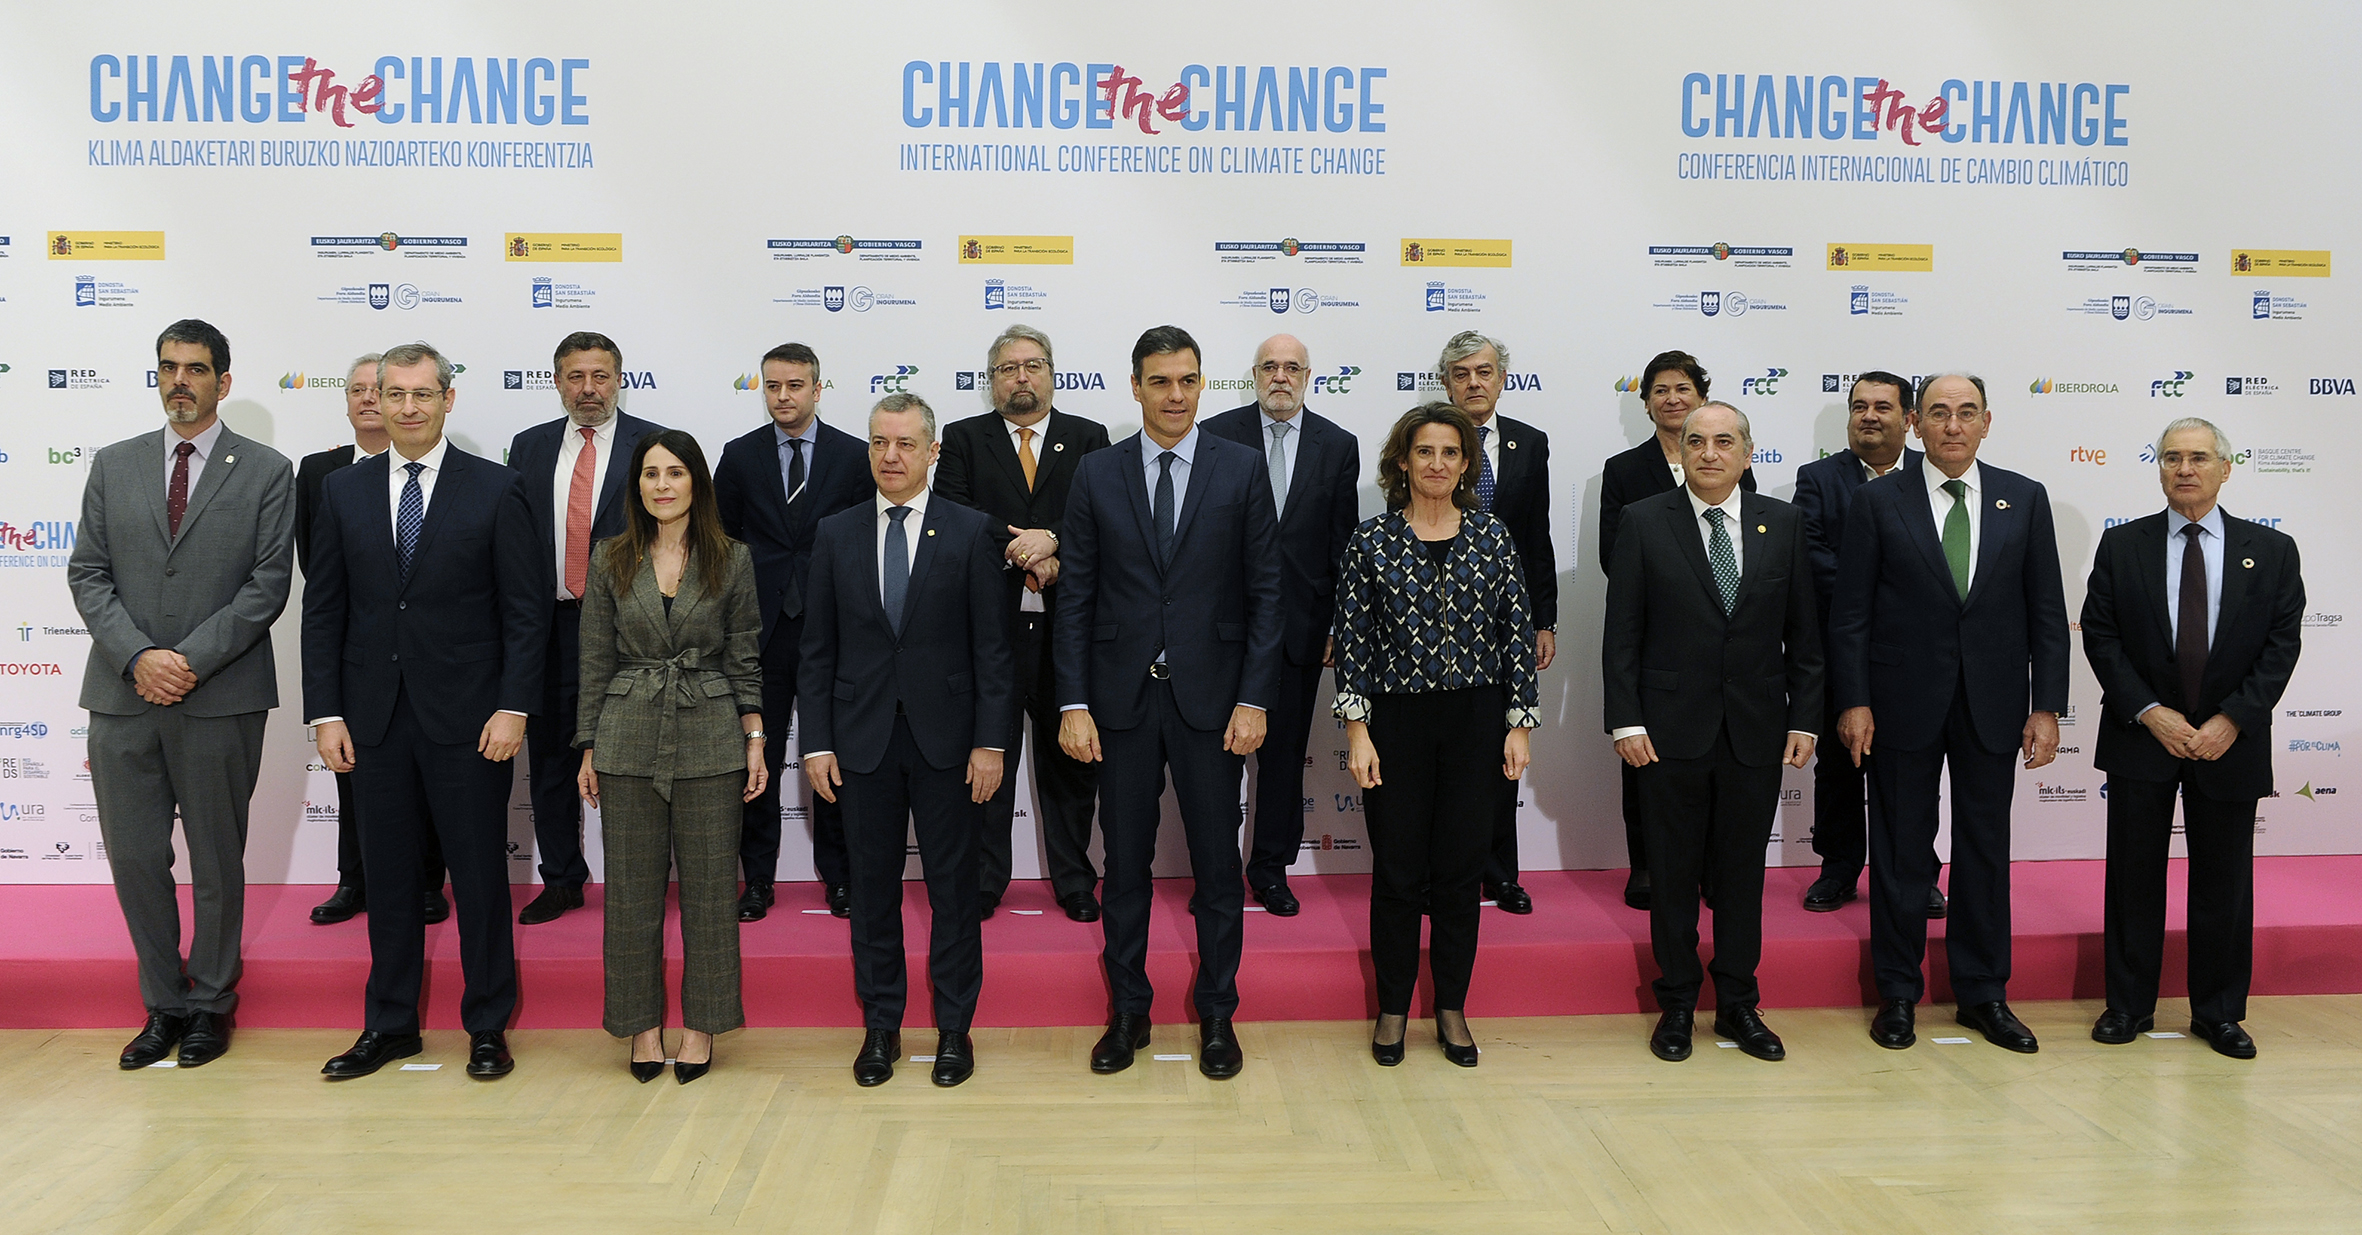 Foto de familia de la conferencia por el clima Change the Change